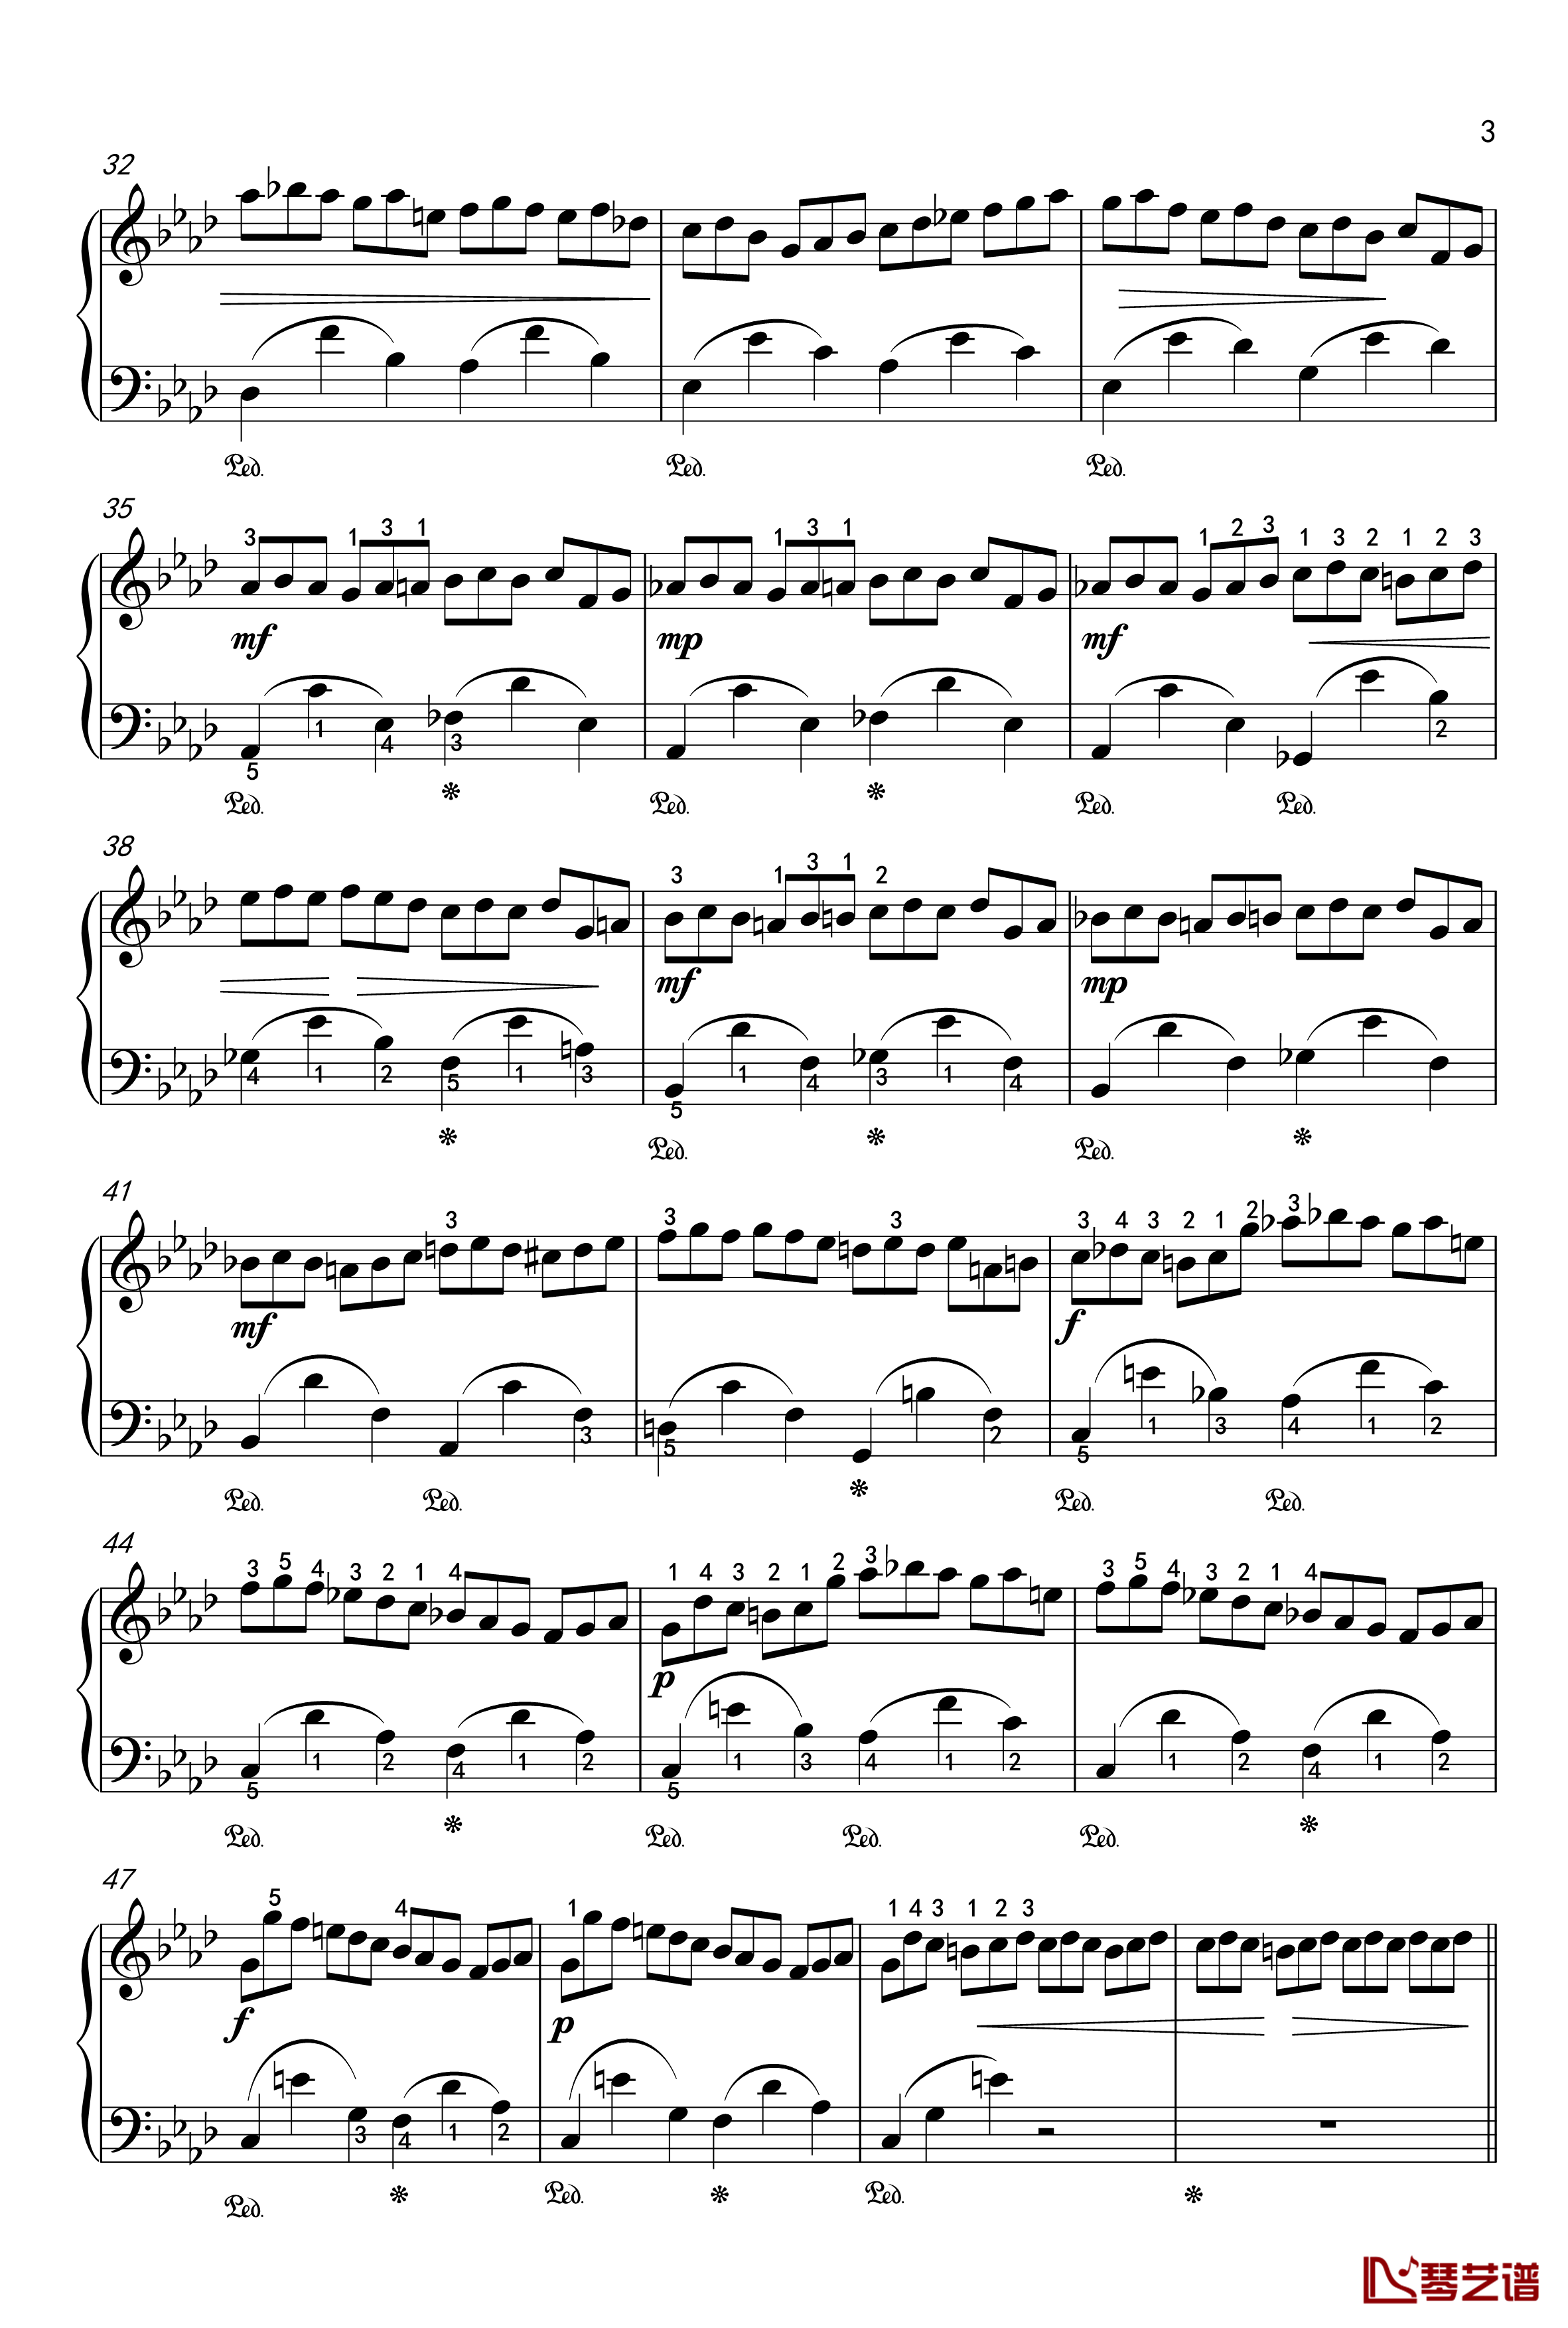 练习曲钢琴谱-OP-25-2-肖邦-chopin3